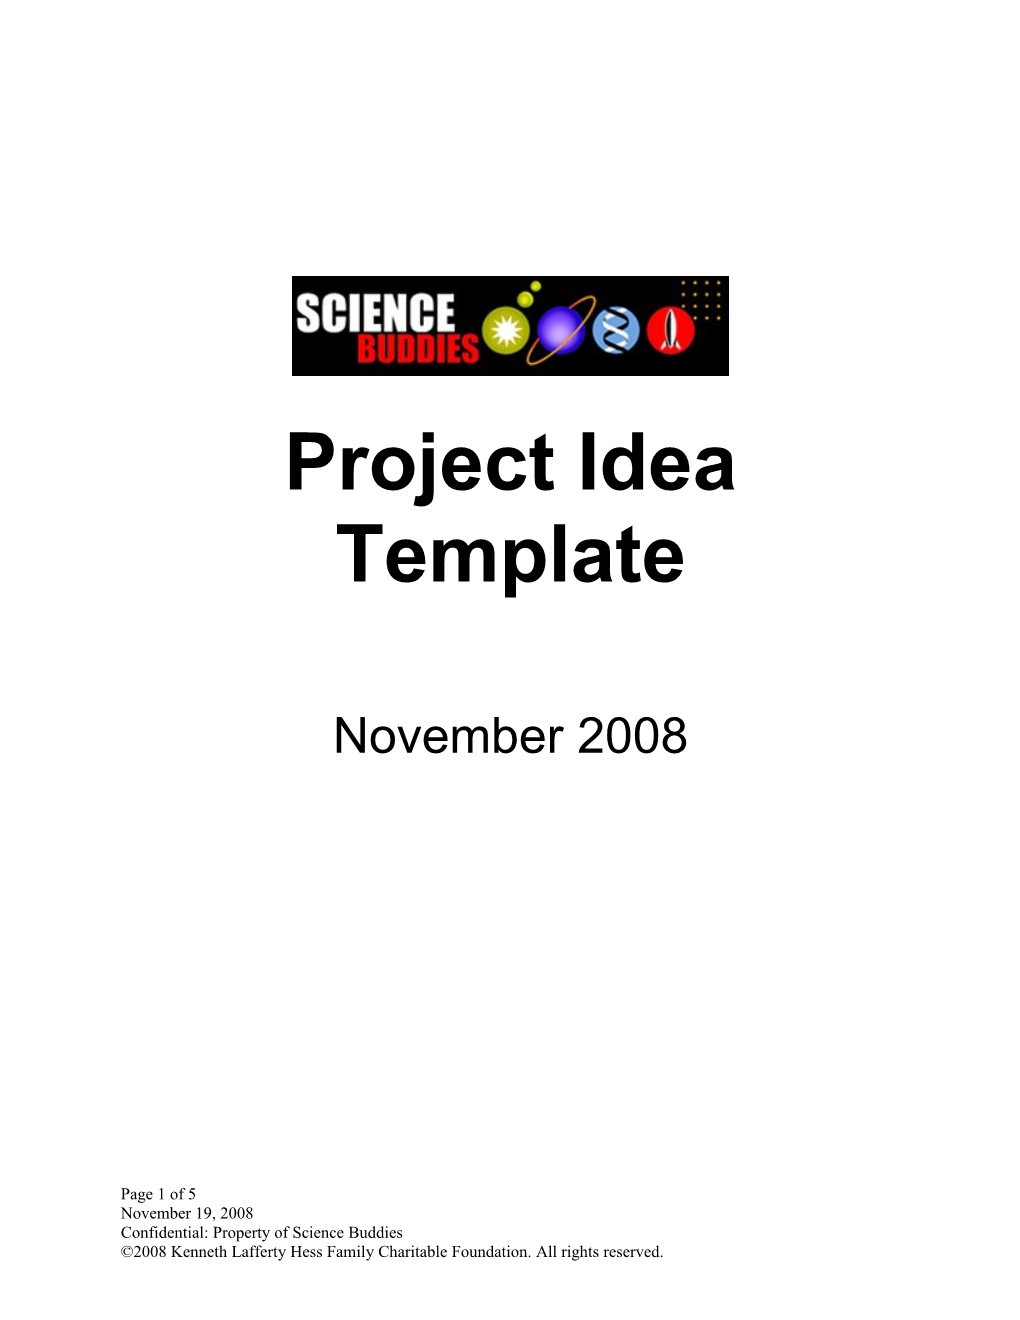 Science Buddies Plugin Description & Template